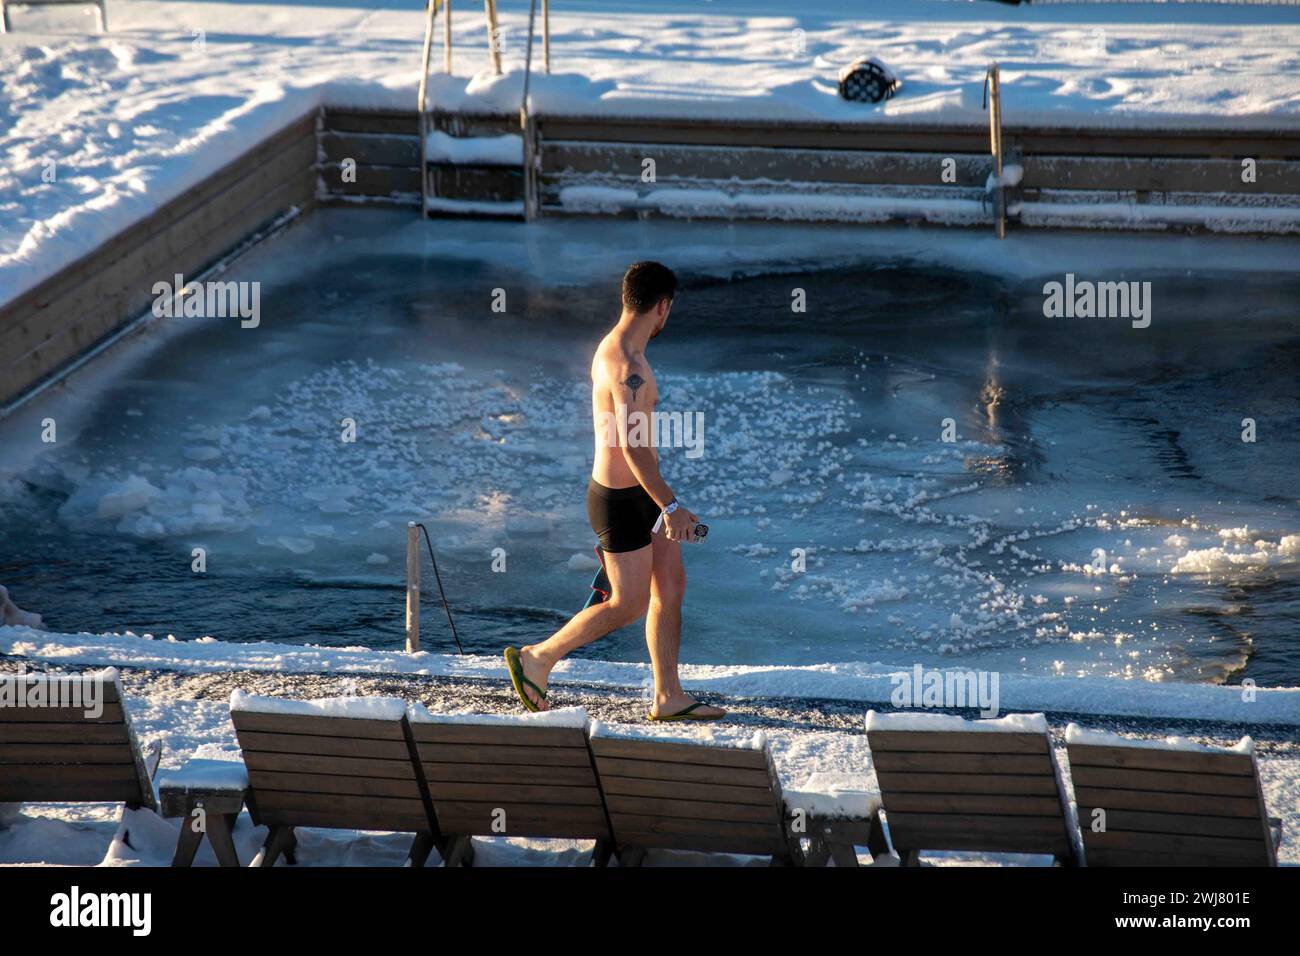 Uomo che cammina davanti alla piscina di acqua di mare ghiacciata presso la Allas Sea Pool, una spa marina e lido, in una soleggiata giornata invernale nel quartiere Katajanokka di Helsinki, Finlandia Foto Stock